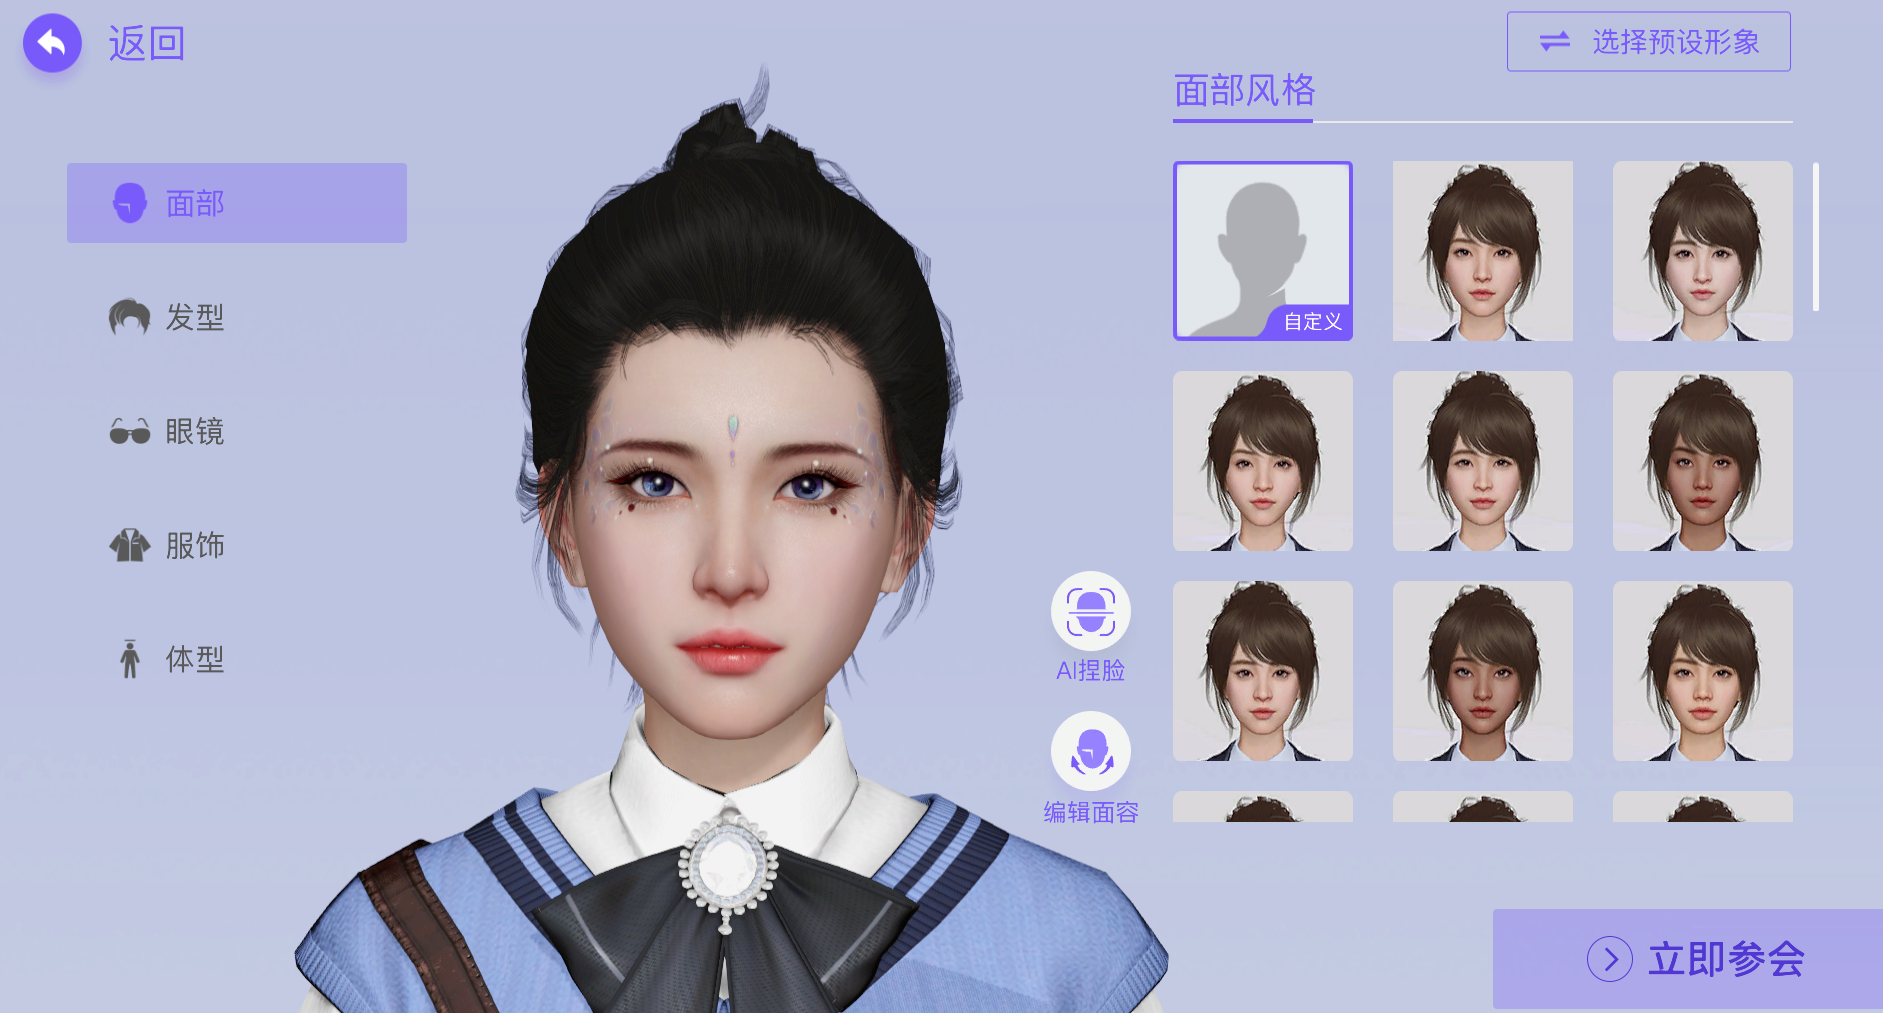 这是一张游戏角色创建界面的截图，展示了一个女性角色的头像和不同发型选项，界面设计现代且具有科技感。